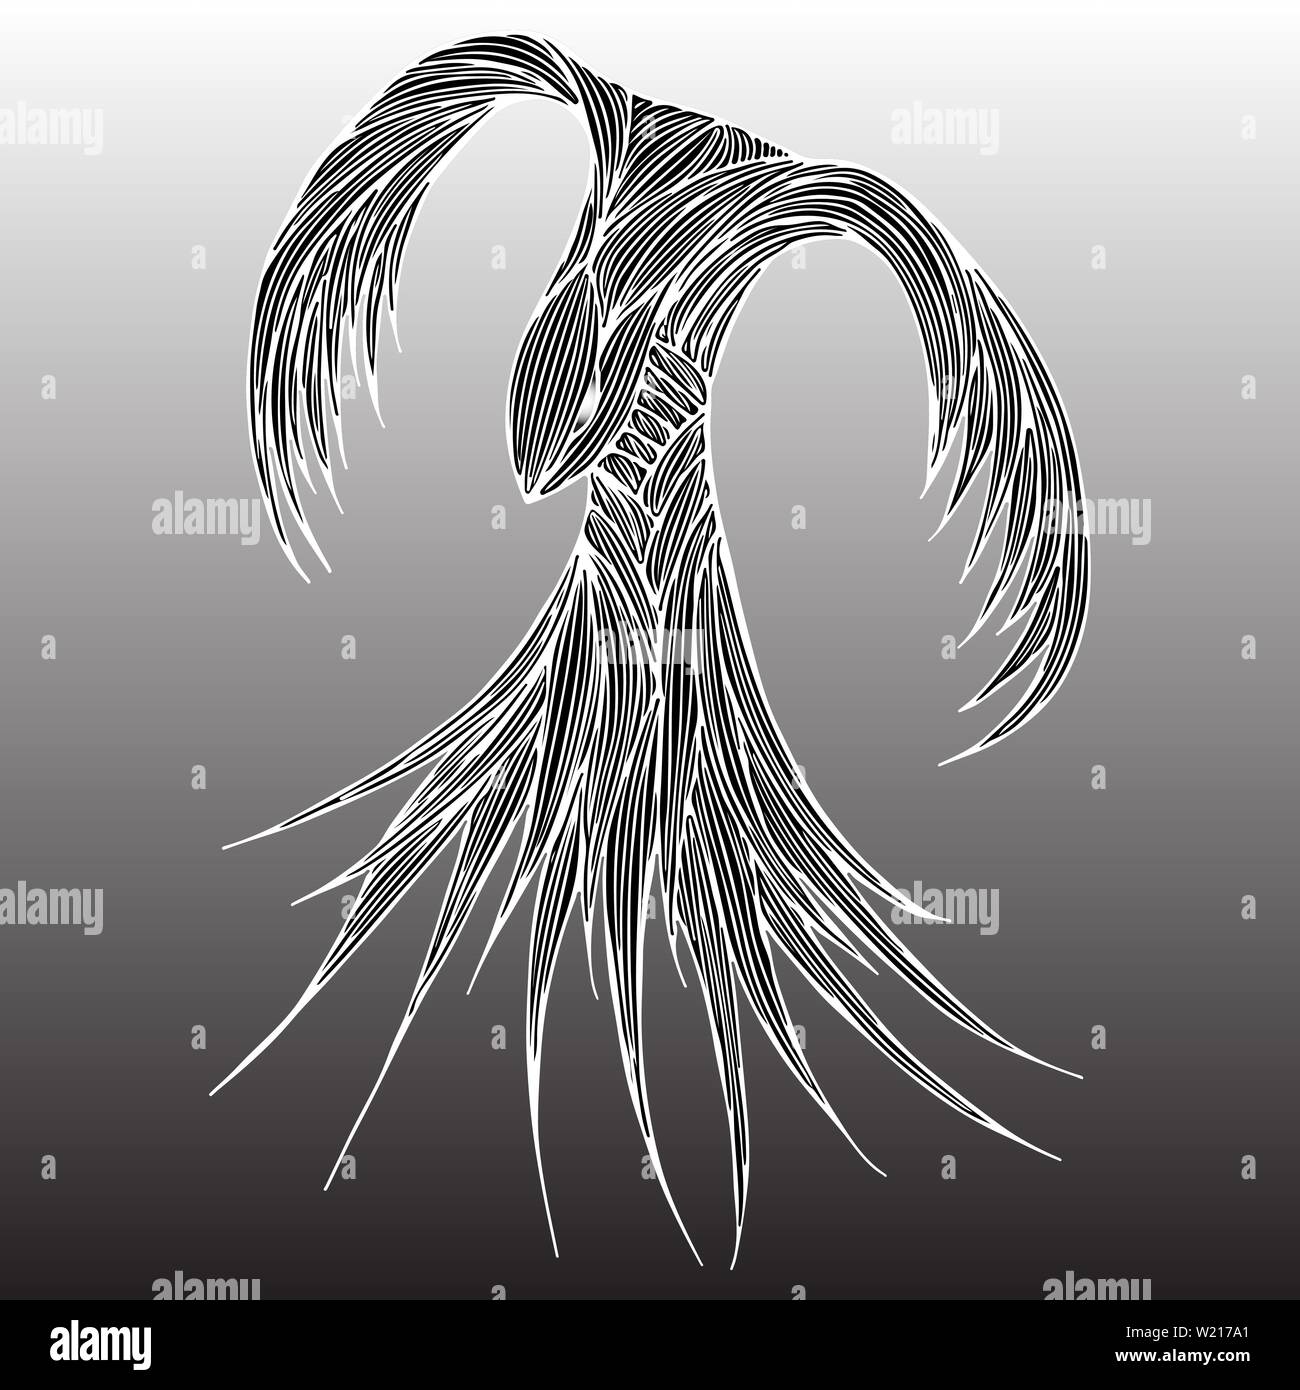 Phoenix Fire bird Illustration et conception des personnages. Oiseau de feu Phoenix isolé sur fond gris. Conception de tatouage animal japonais. Contours dessinés à la main, Illustration de Vecteur